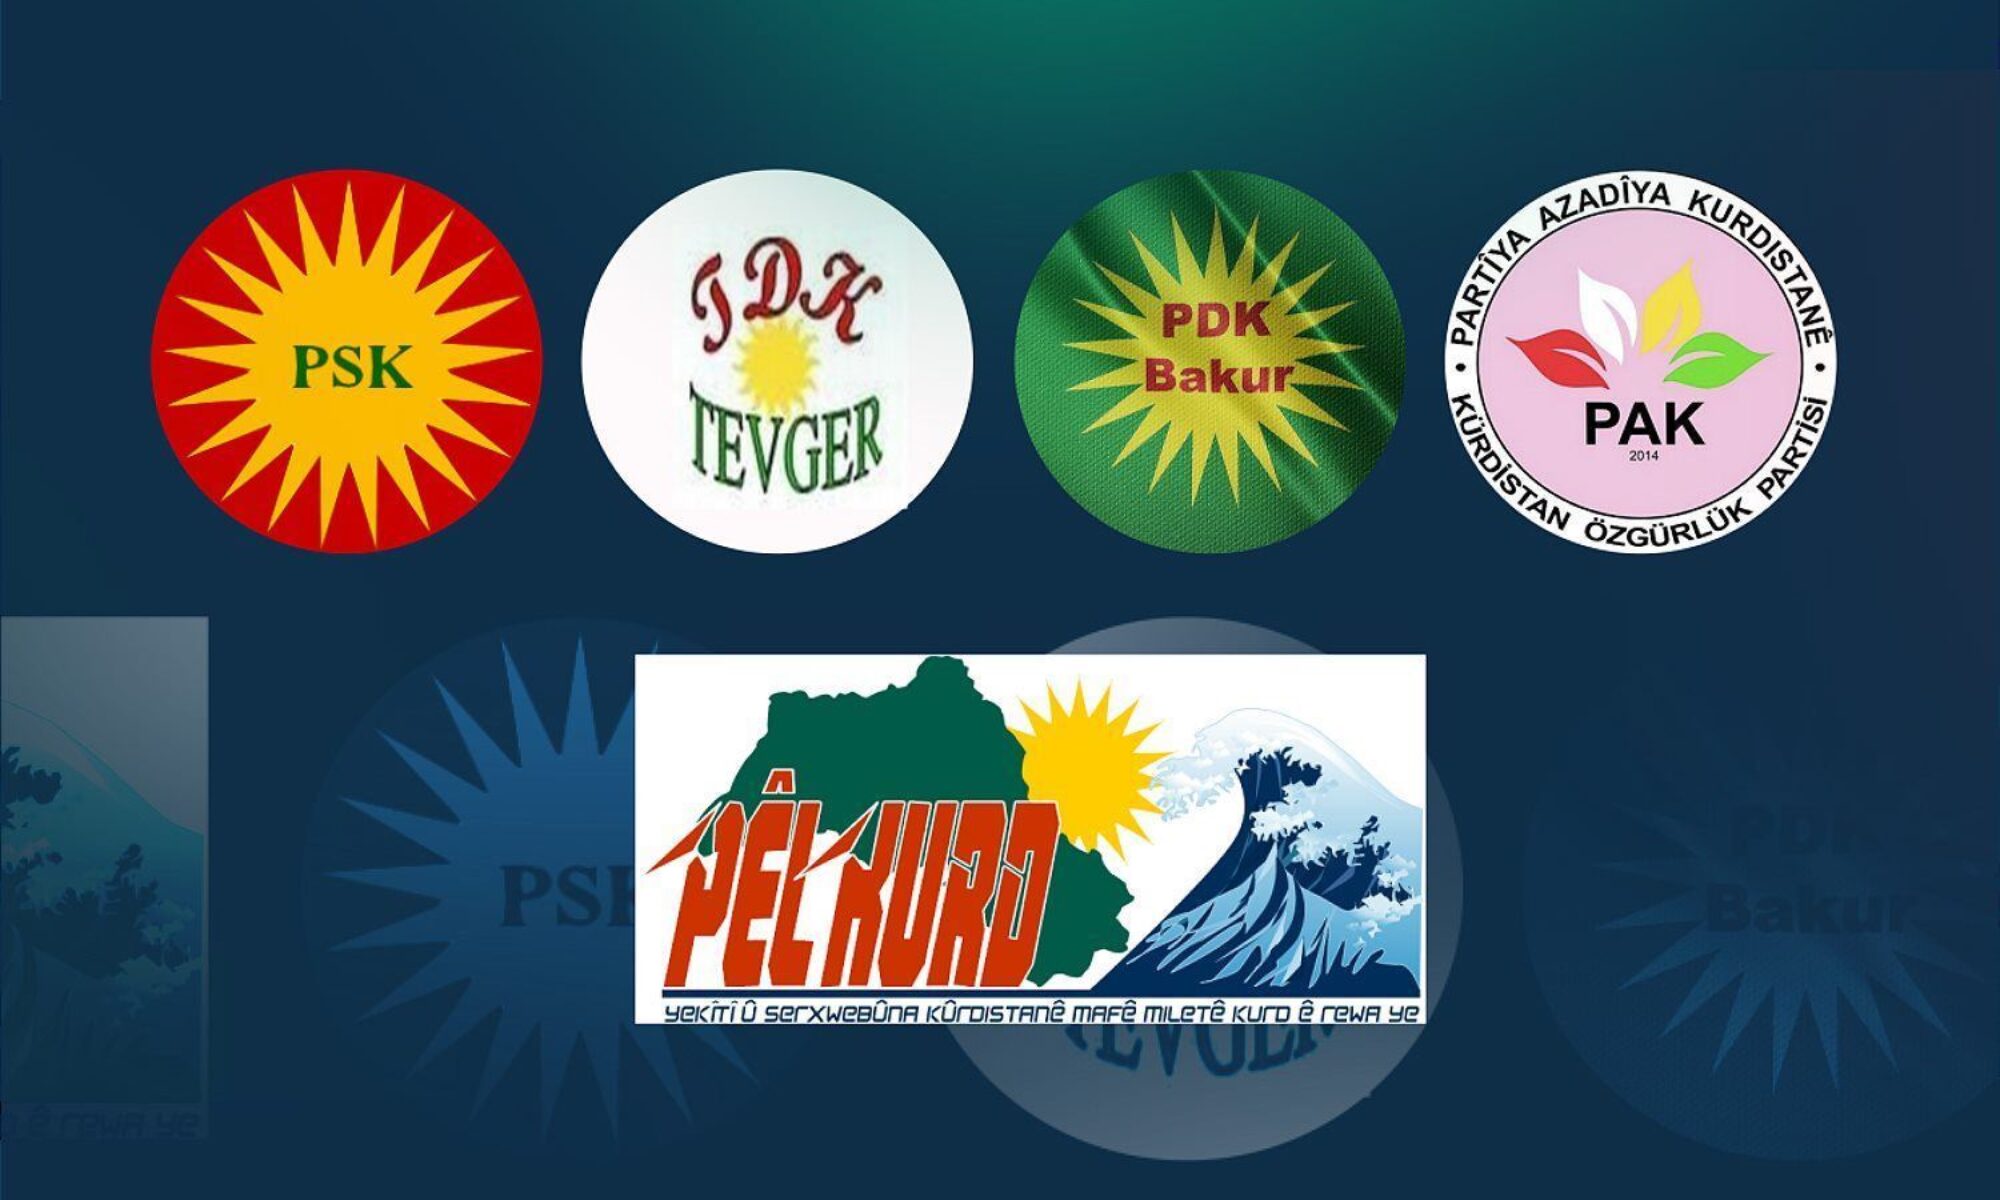 5 Kürt partisi: Kürt milletine karşı yürütülen sistemli jenosidin bir devamı olduğundan kuşkumuz yoktur Kürdistan Özgürlük Partisi (PAK), Kürdistan Demokrat Partisi-Bakur (PDK-Bakur), PÊLKURD, Kürdistan Sosyalist Partisi (PSK) ve Kürdistan Demokratik Hareketi (TEVGER) Afyon, ankara, Konya, Irkçı saldırı